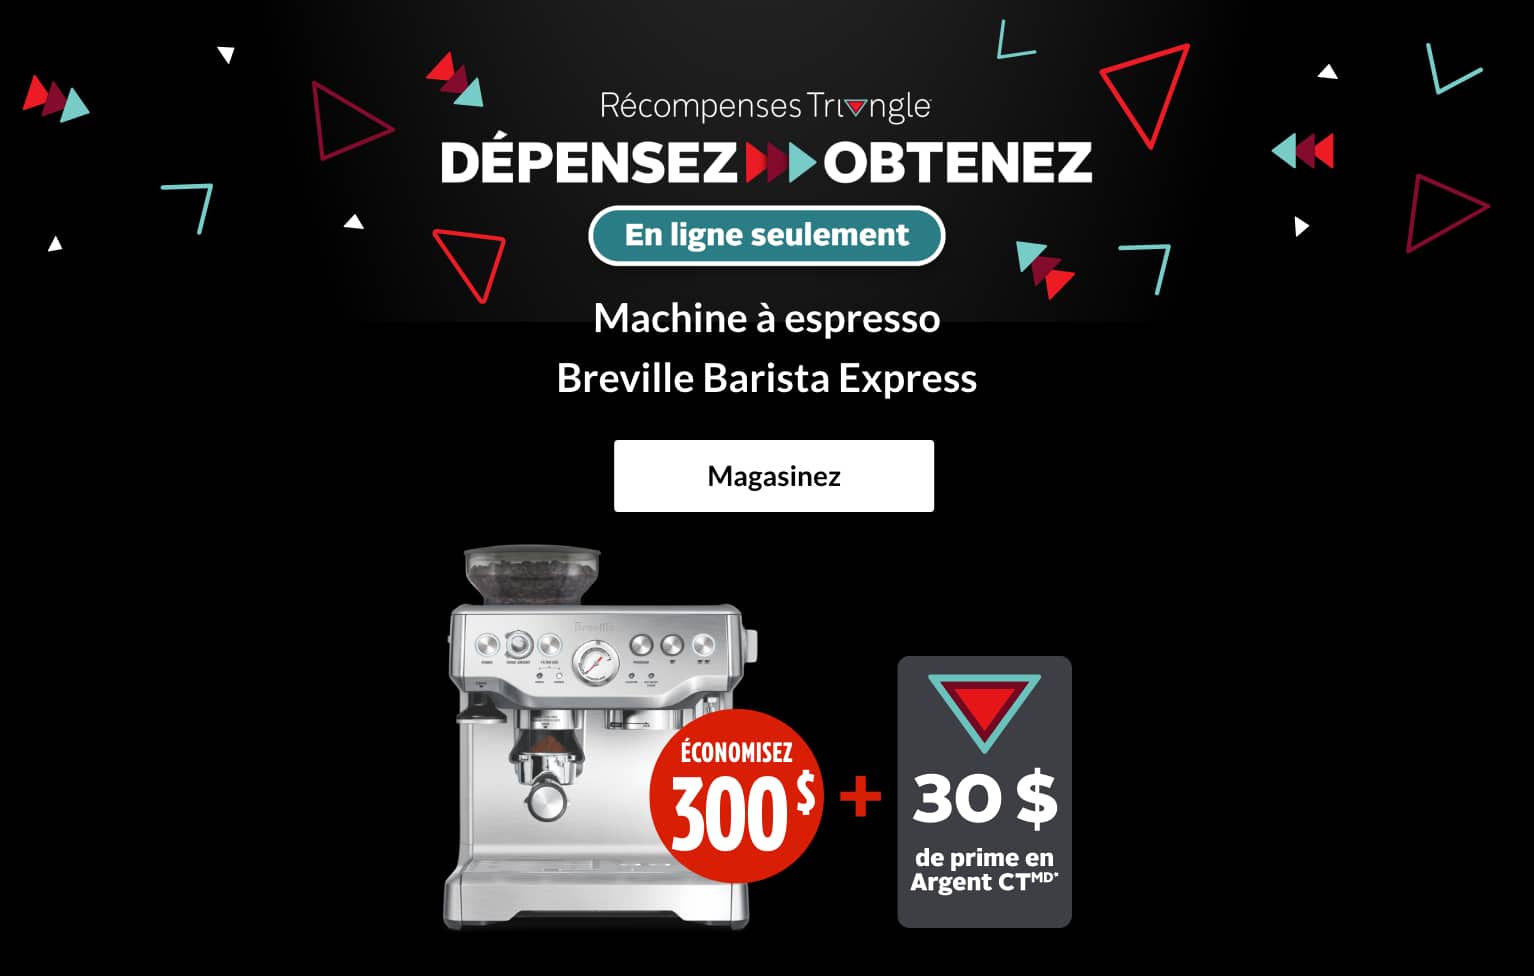 Machine à espresso Breville Barista Express  ÉCONOMISEZ 300 $ + GAGNEZ une prime de 30 $ en Argent CT